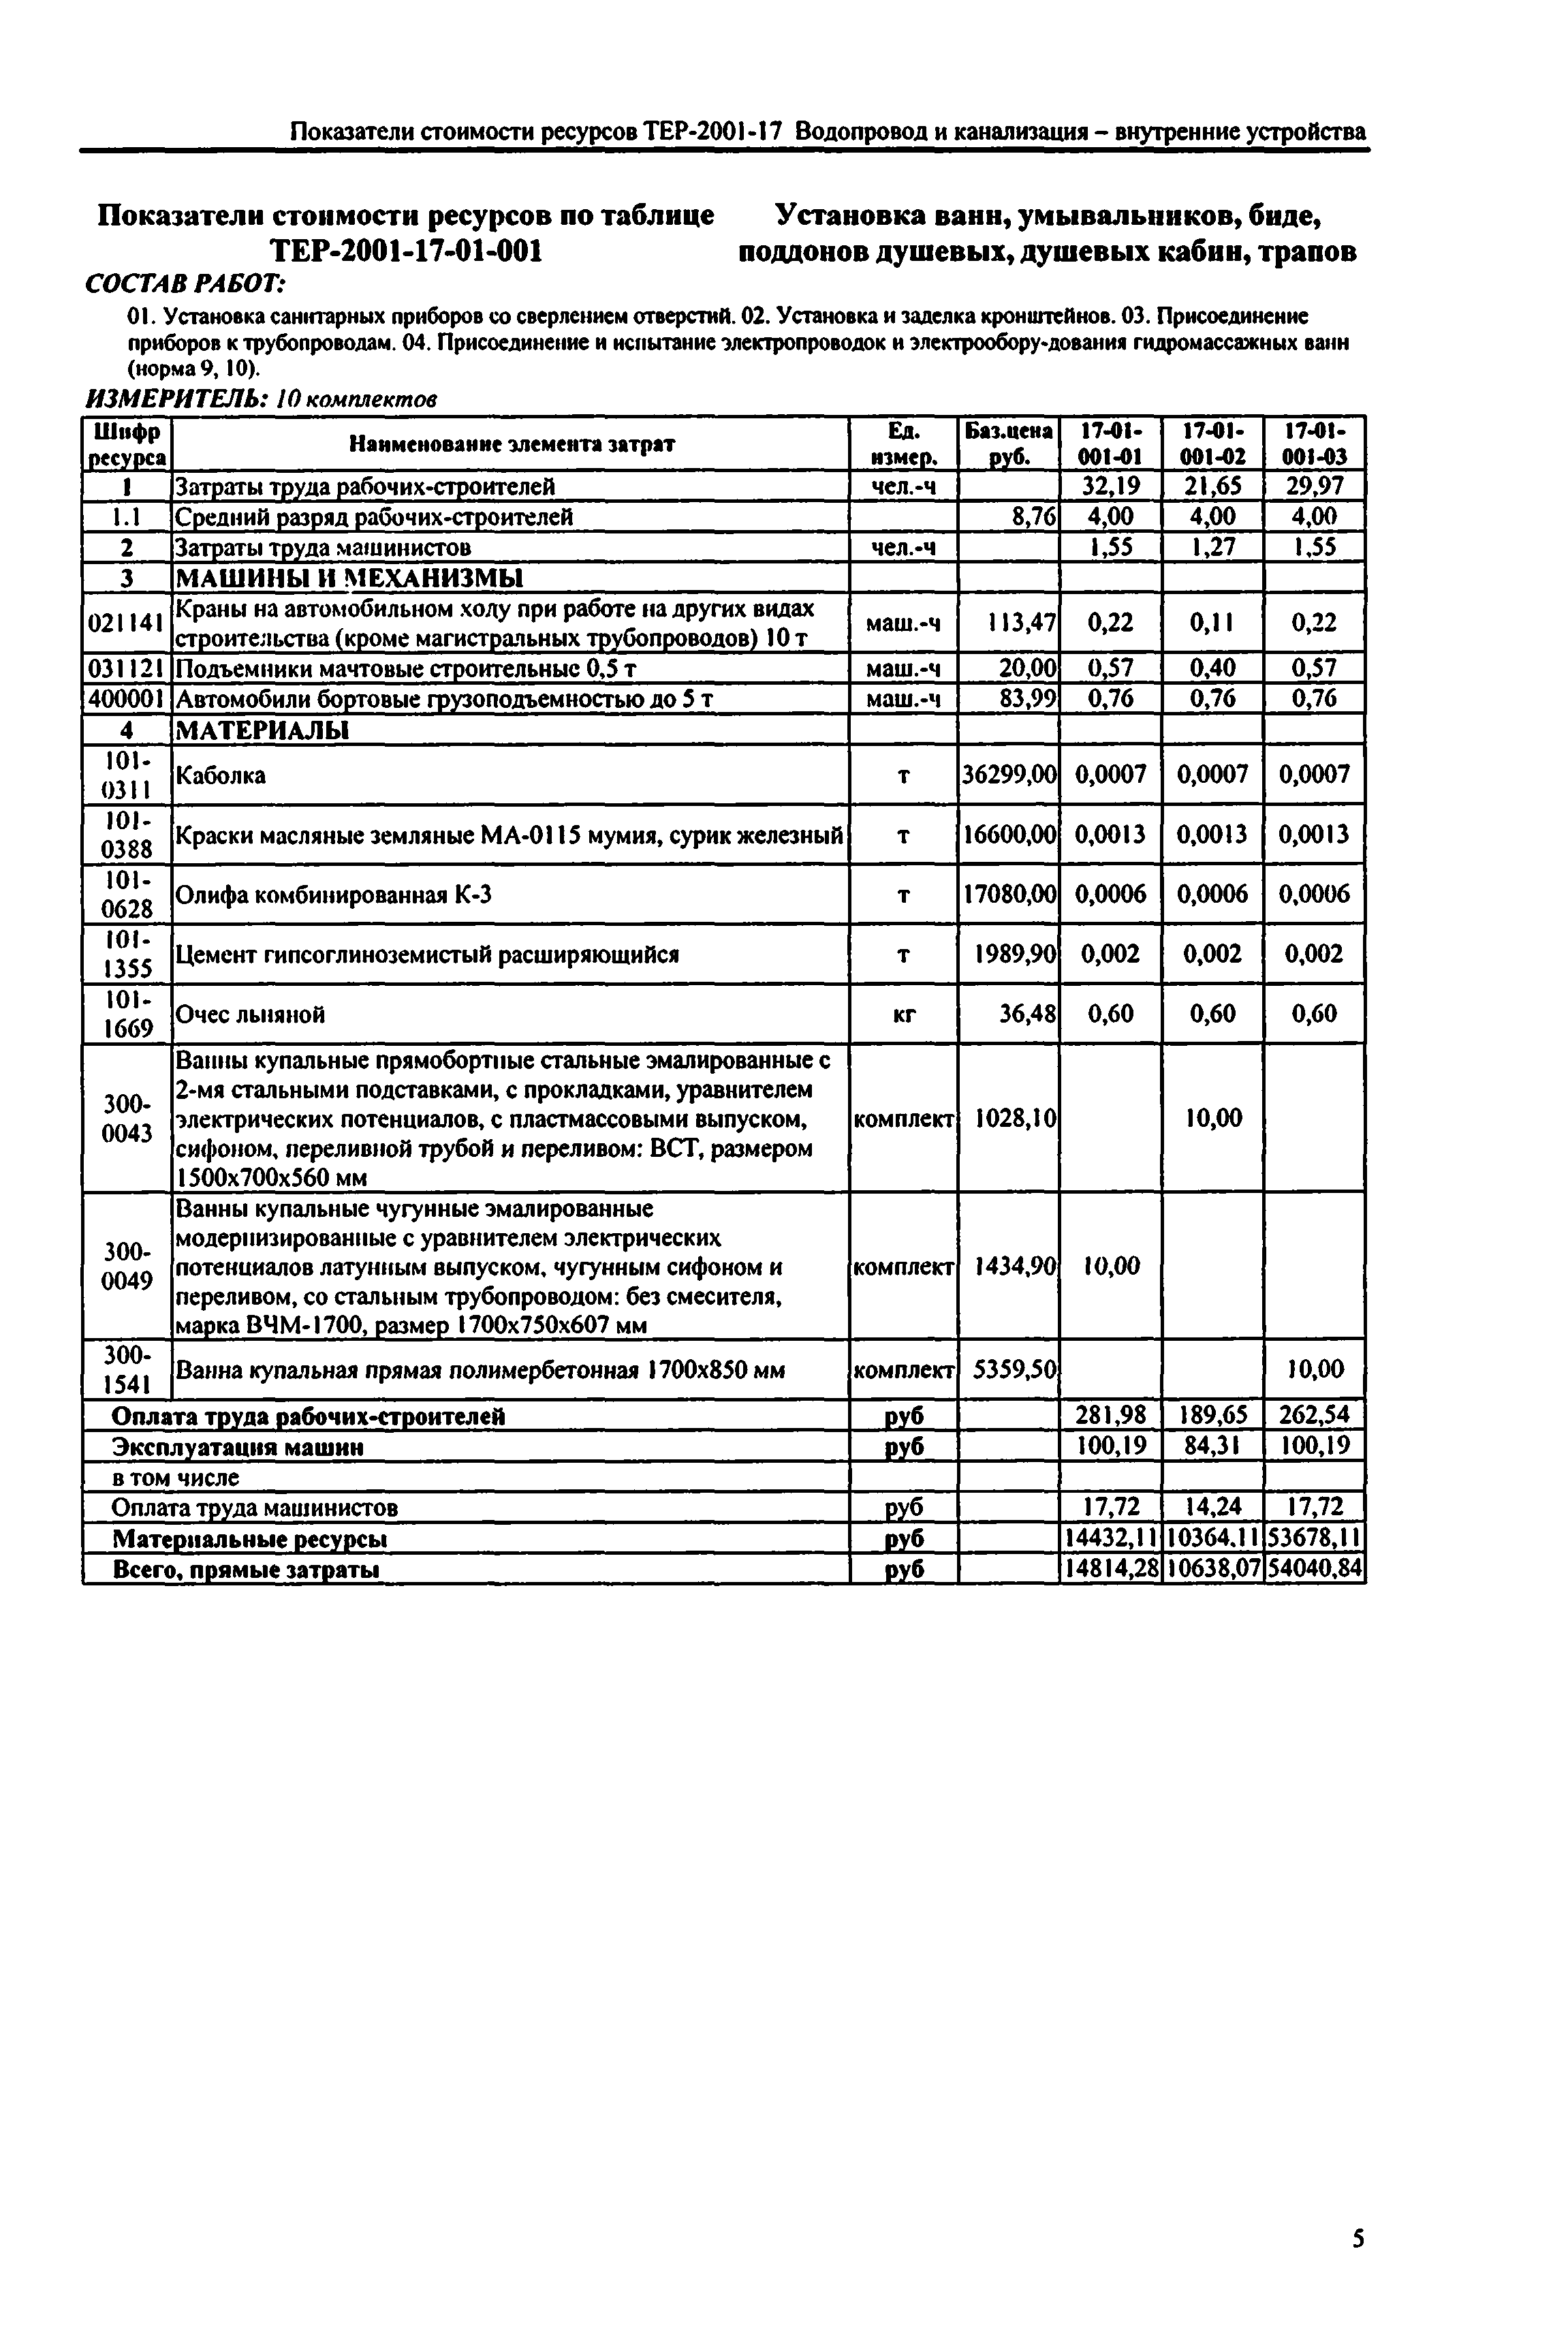 Справочное пособие к ТЕР 81-02-17-2001